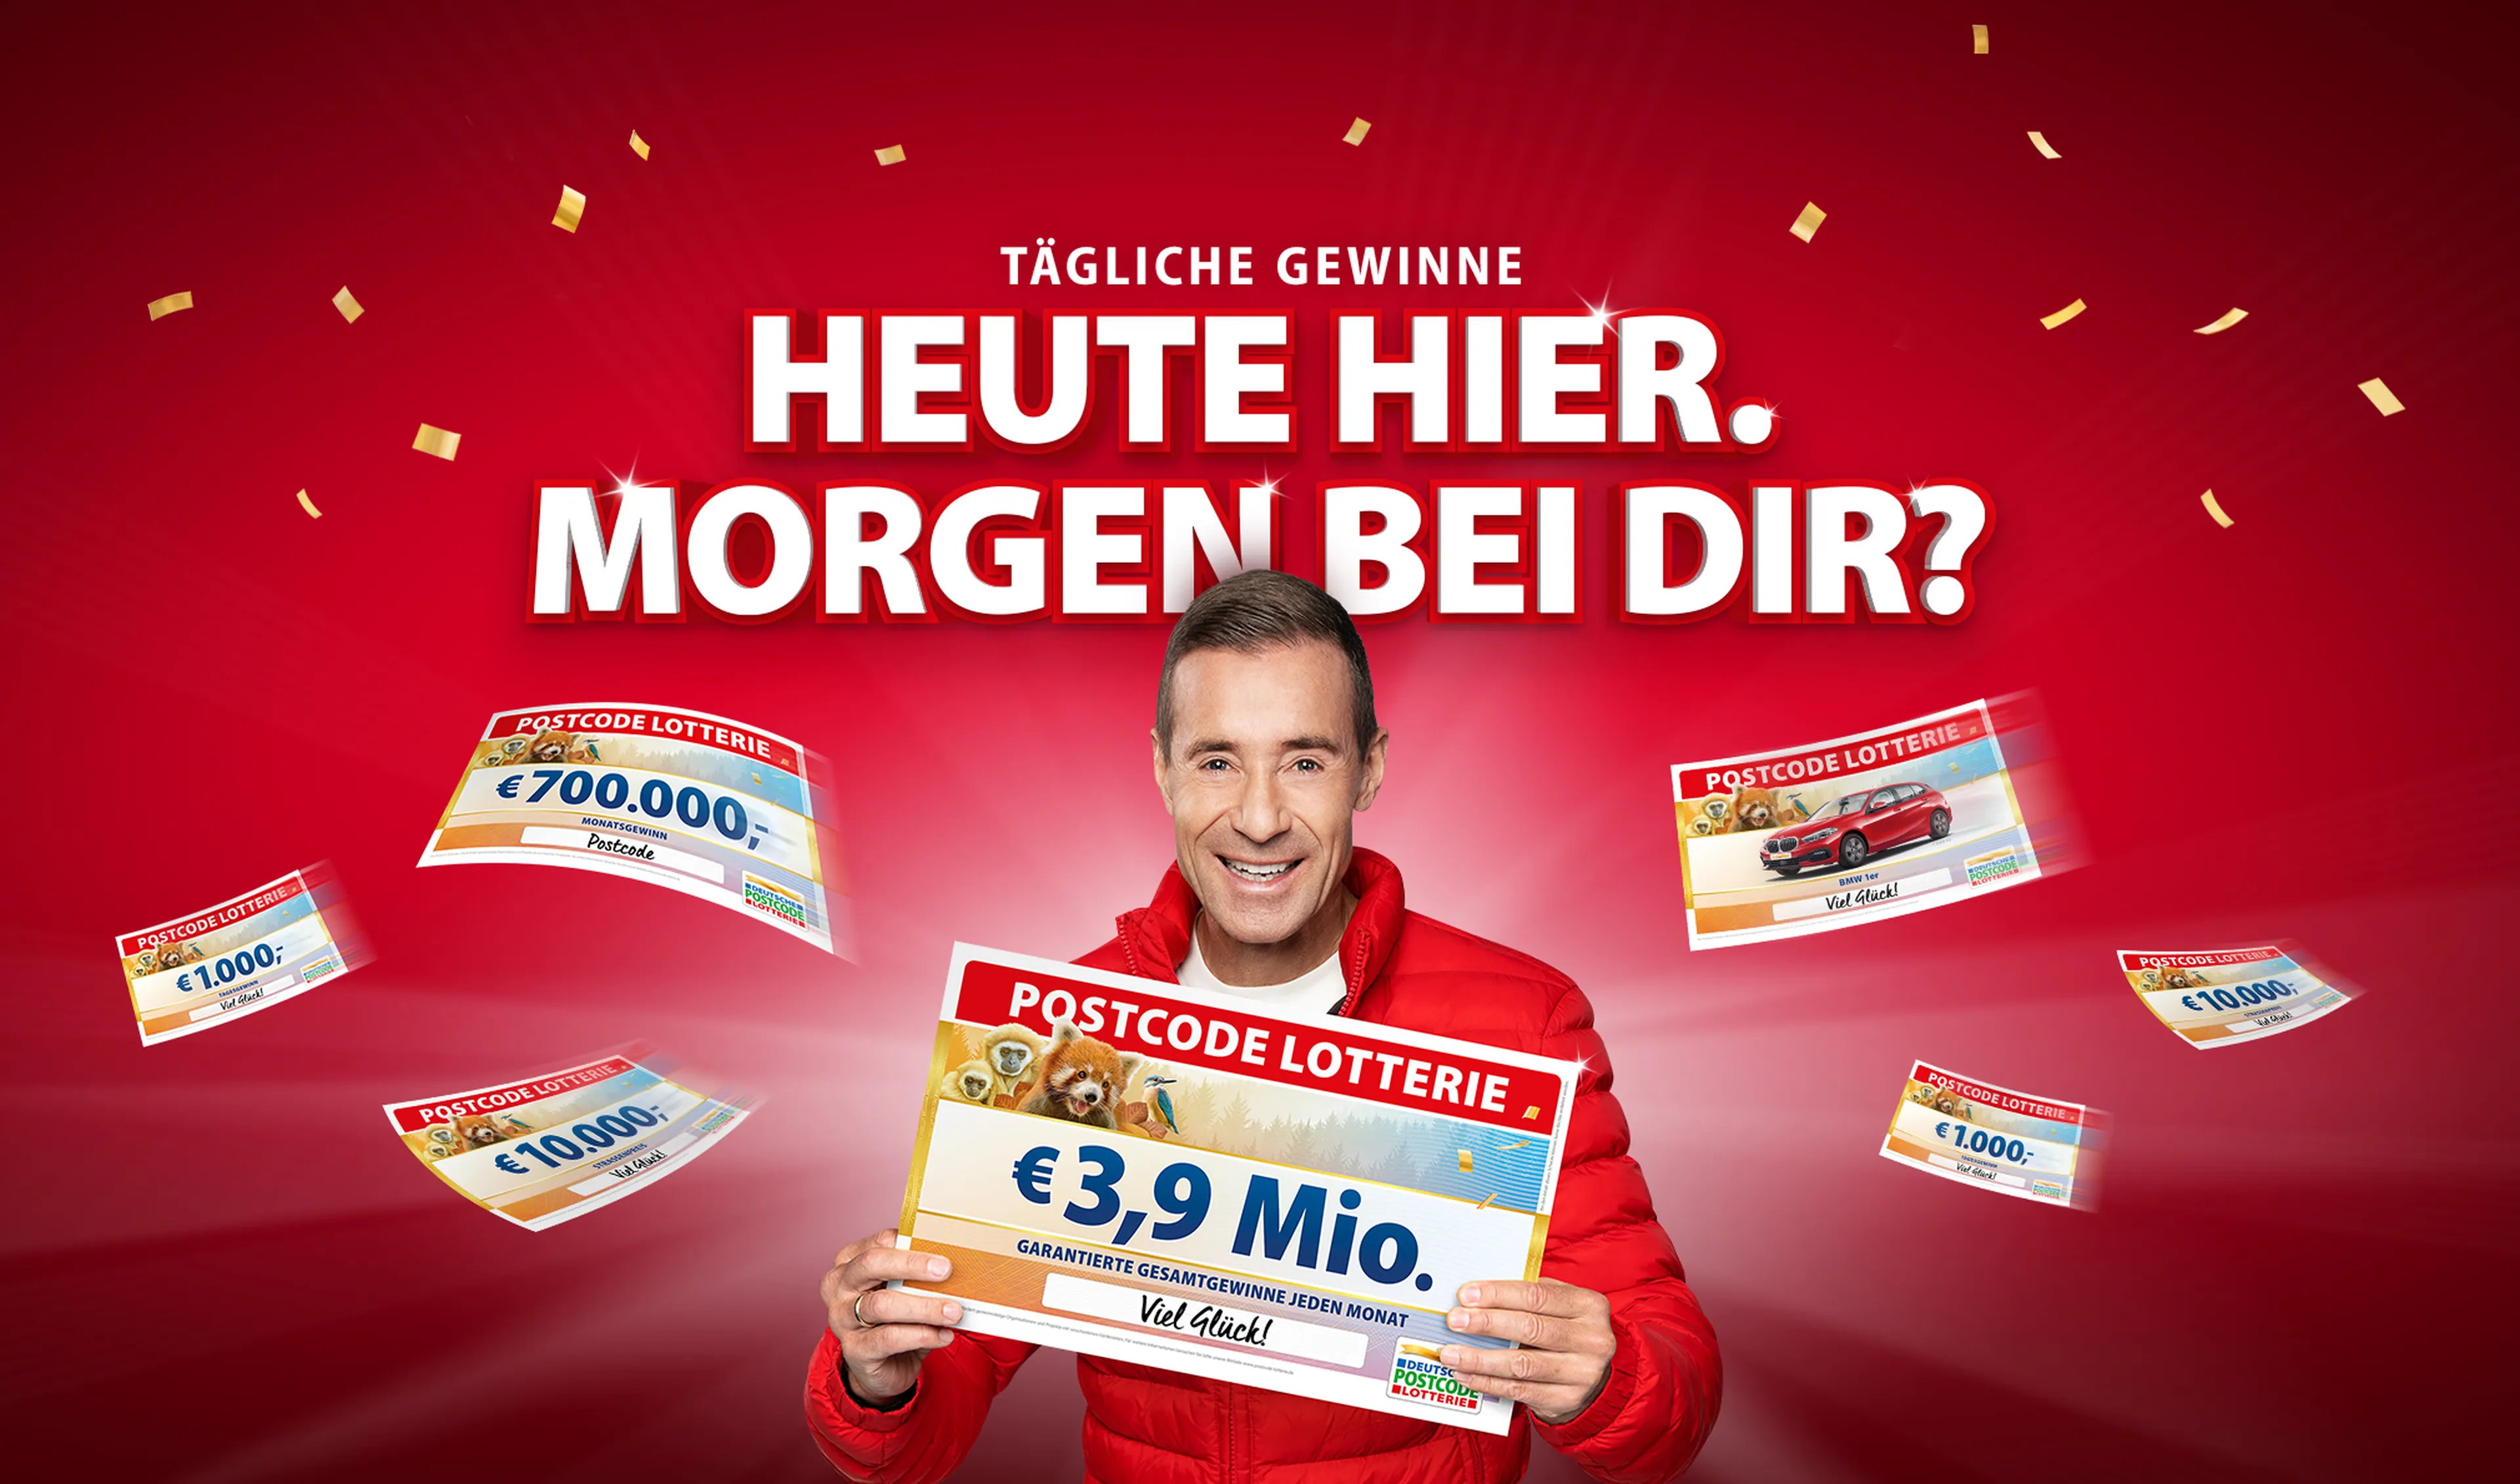 Jeden Monat 3,9 Millionen Euro garantierte Gewinne bei der Deutschen Postcode Lotterie